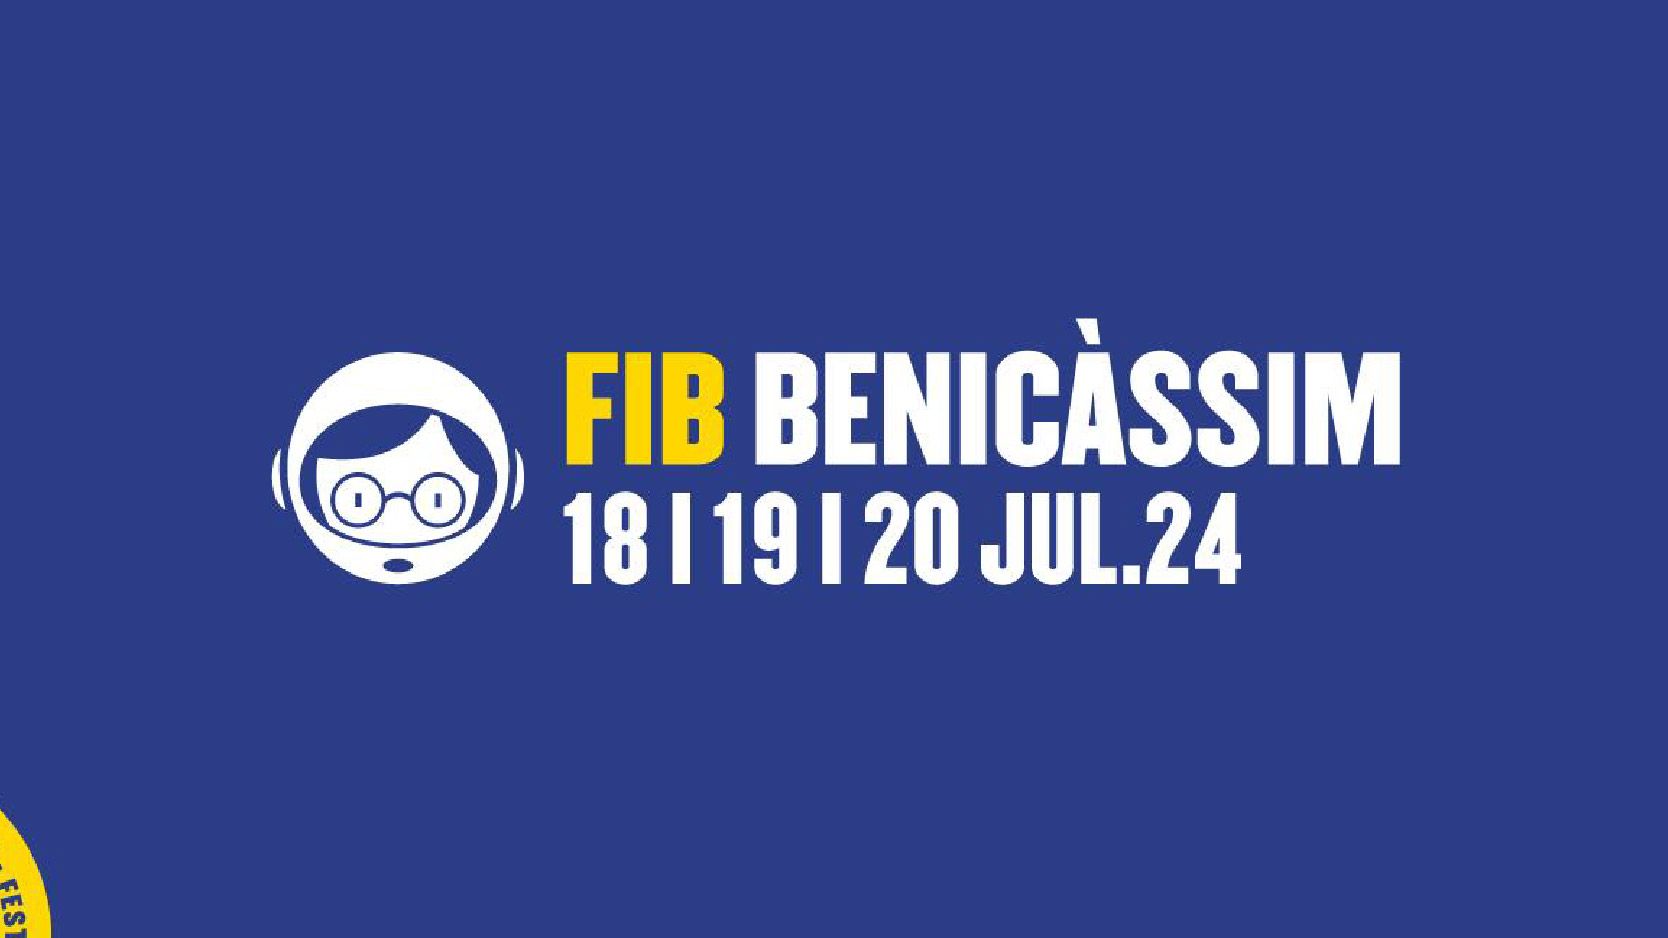 Festival Internacional de Benicassim cover